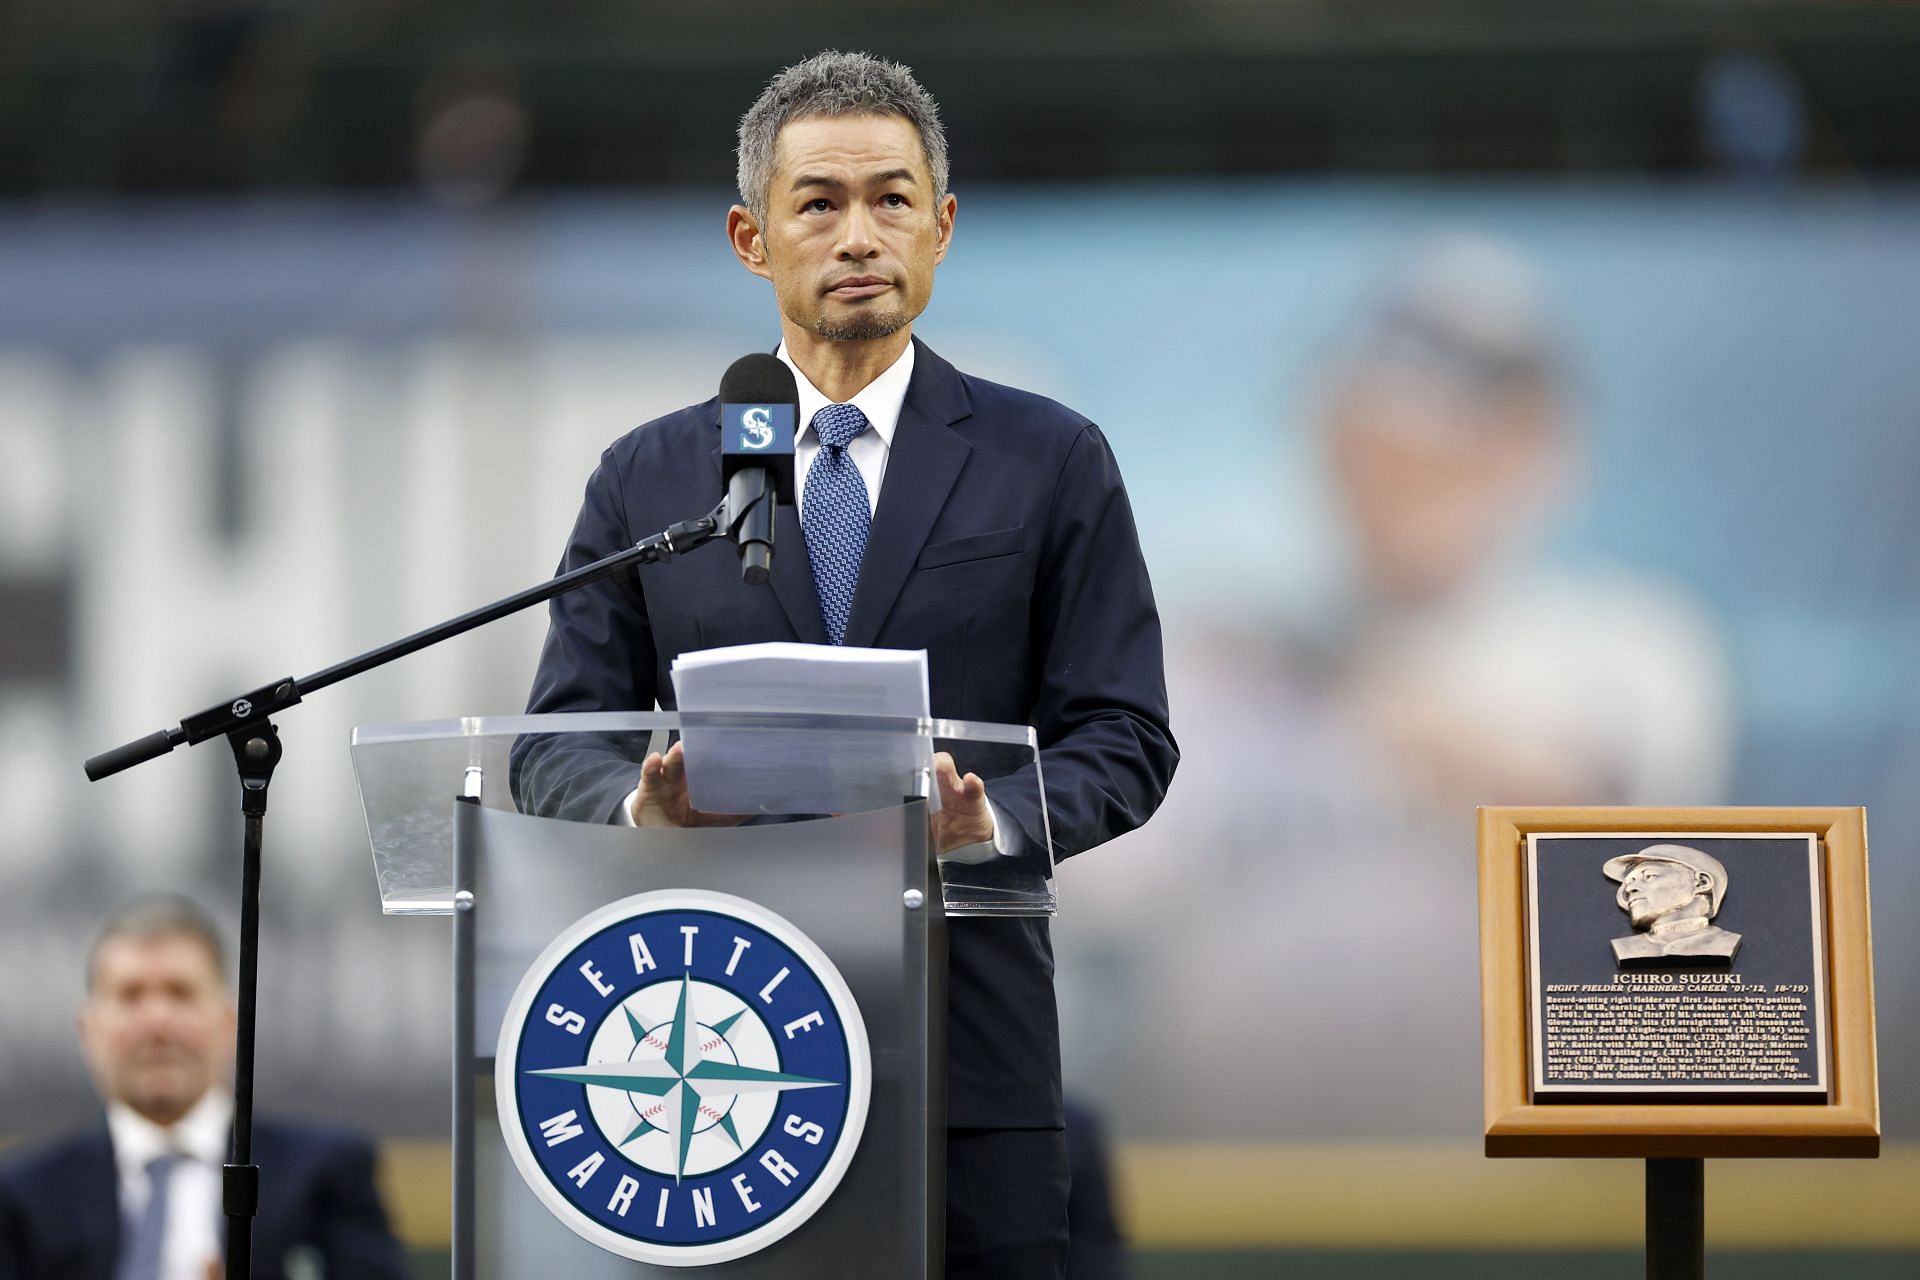 Seattle Mariners' Ichiro Suzuki, of Japan, (C), is met at home